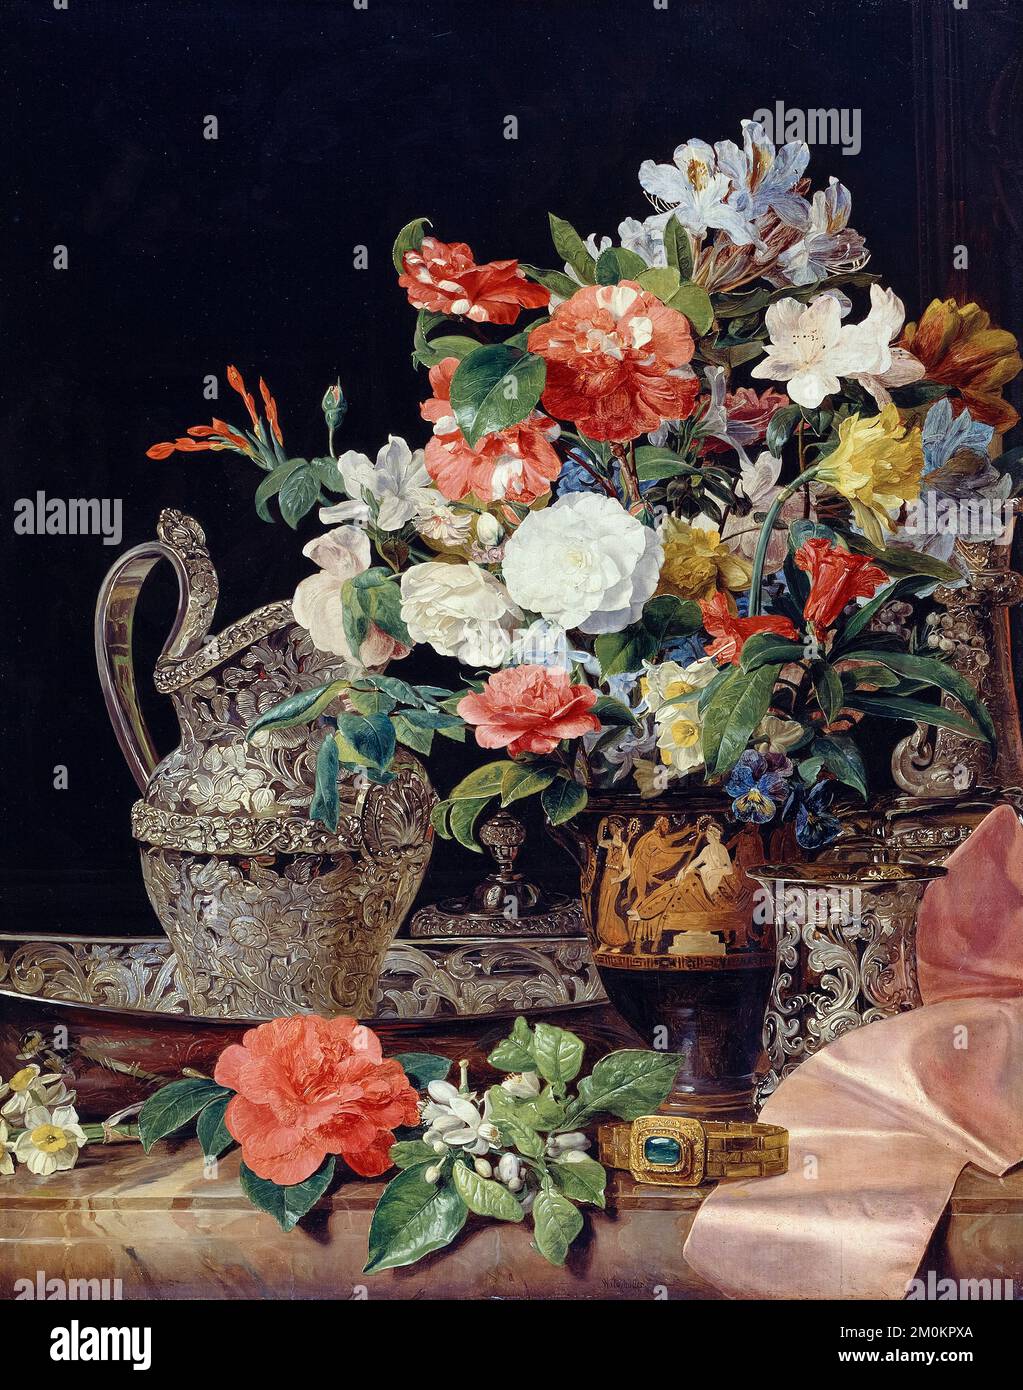 Ferdinand Georg Waldmüller, bouquet de vases en argent et vase antique, peinture encore à l'huile sur bois, vers 1840 Banque D'Images